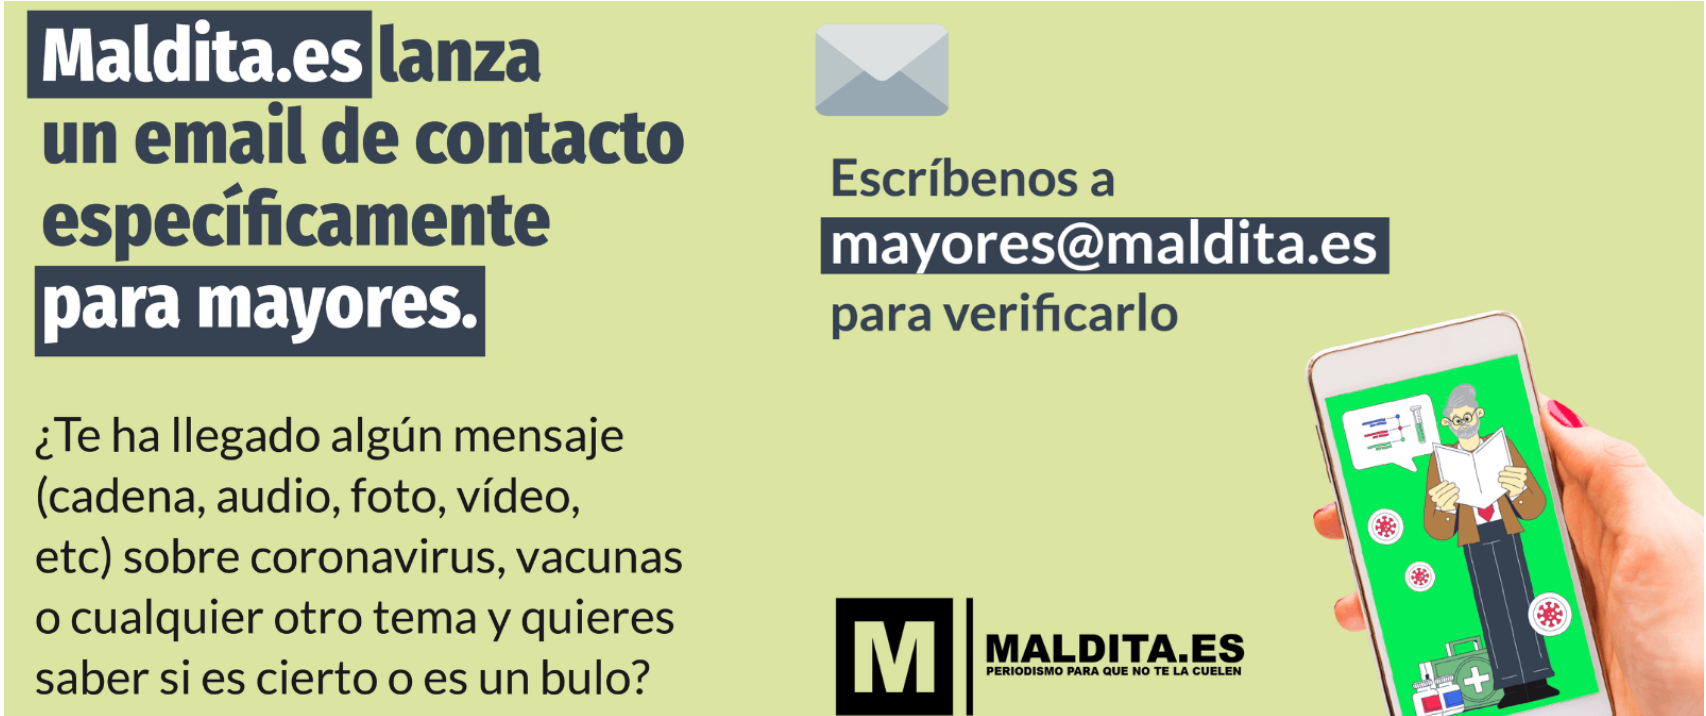 Maldita.es lanza un correo electrónico para que personas mayores puedan consultar sus dudas y verificar contenidos